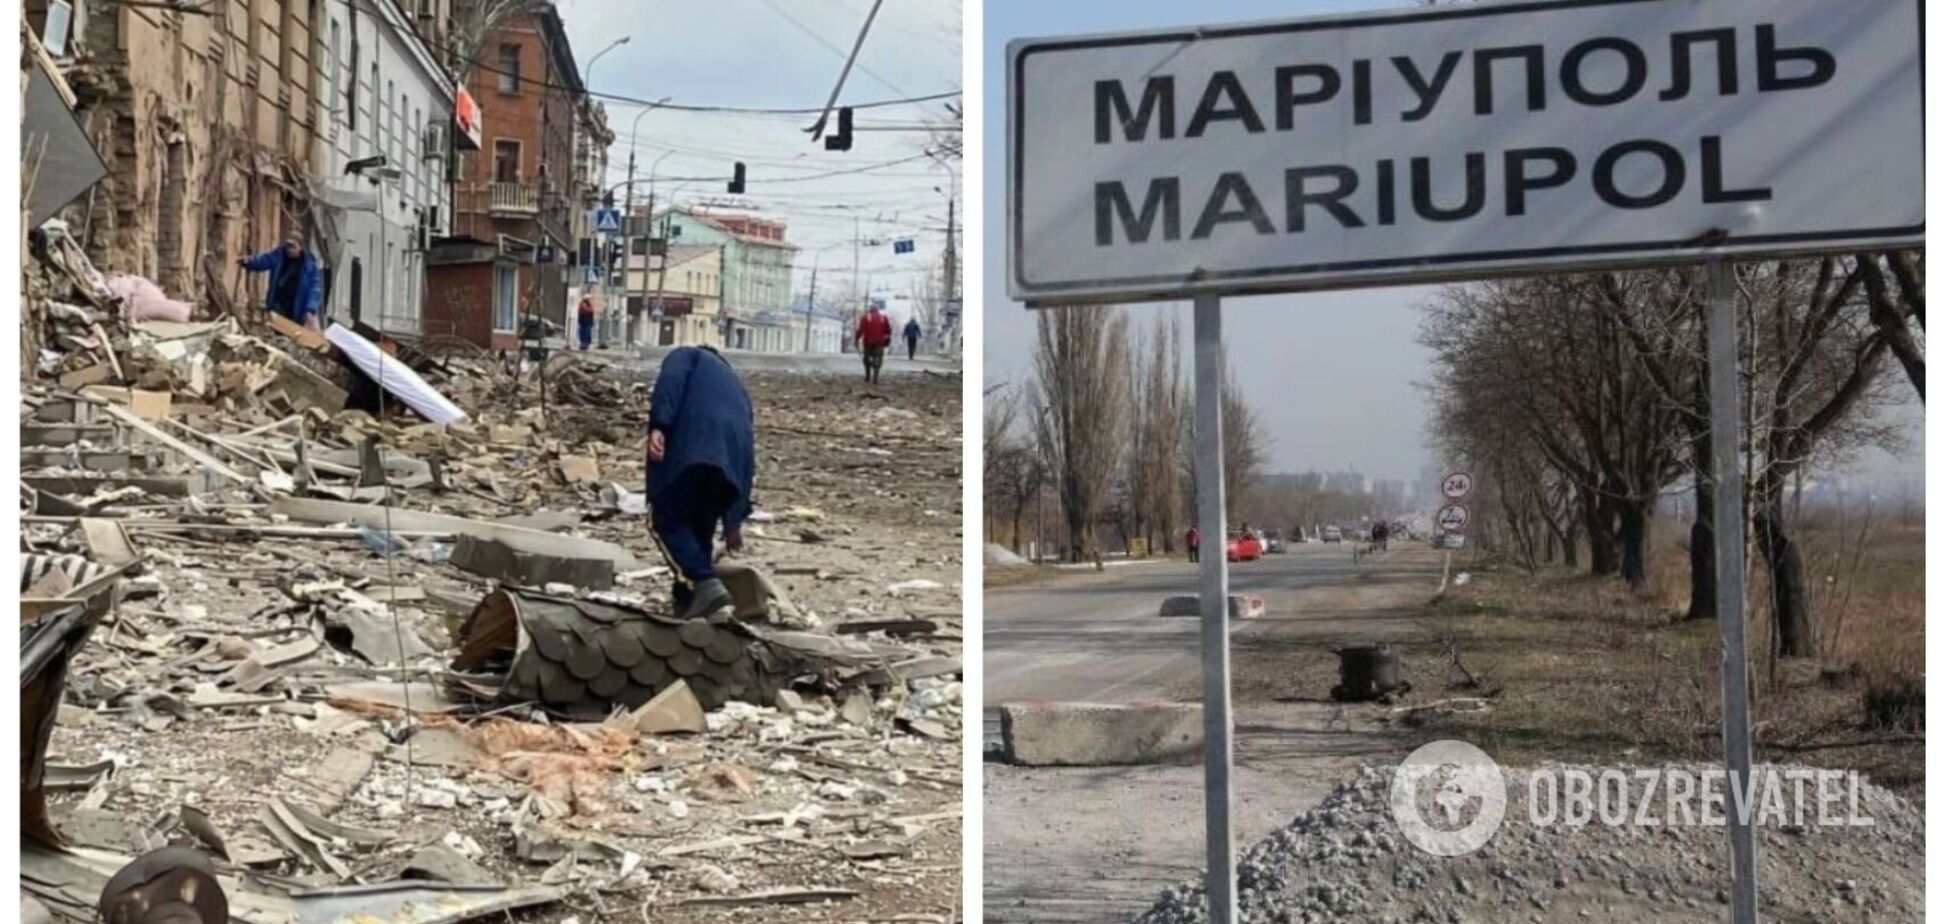 Закрывала собой сына во время обстрелов: украинка рассказала об 'аде' в Мариуполе и бегстве из города